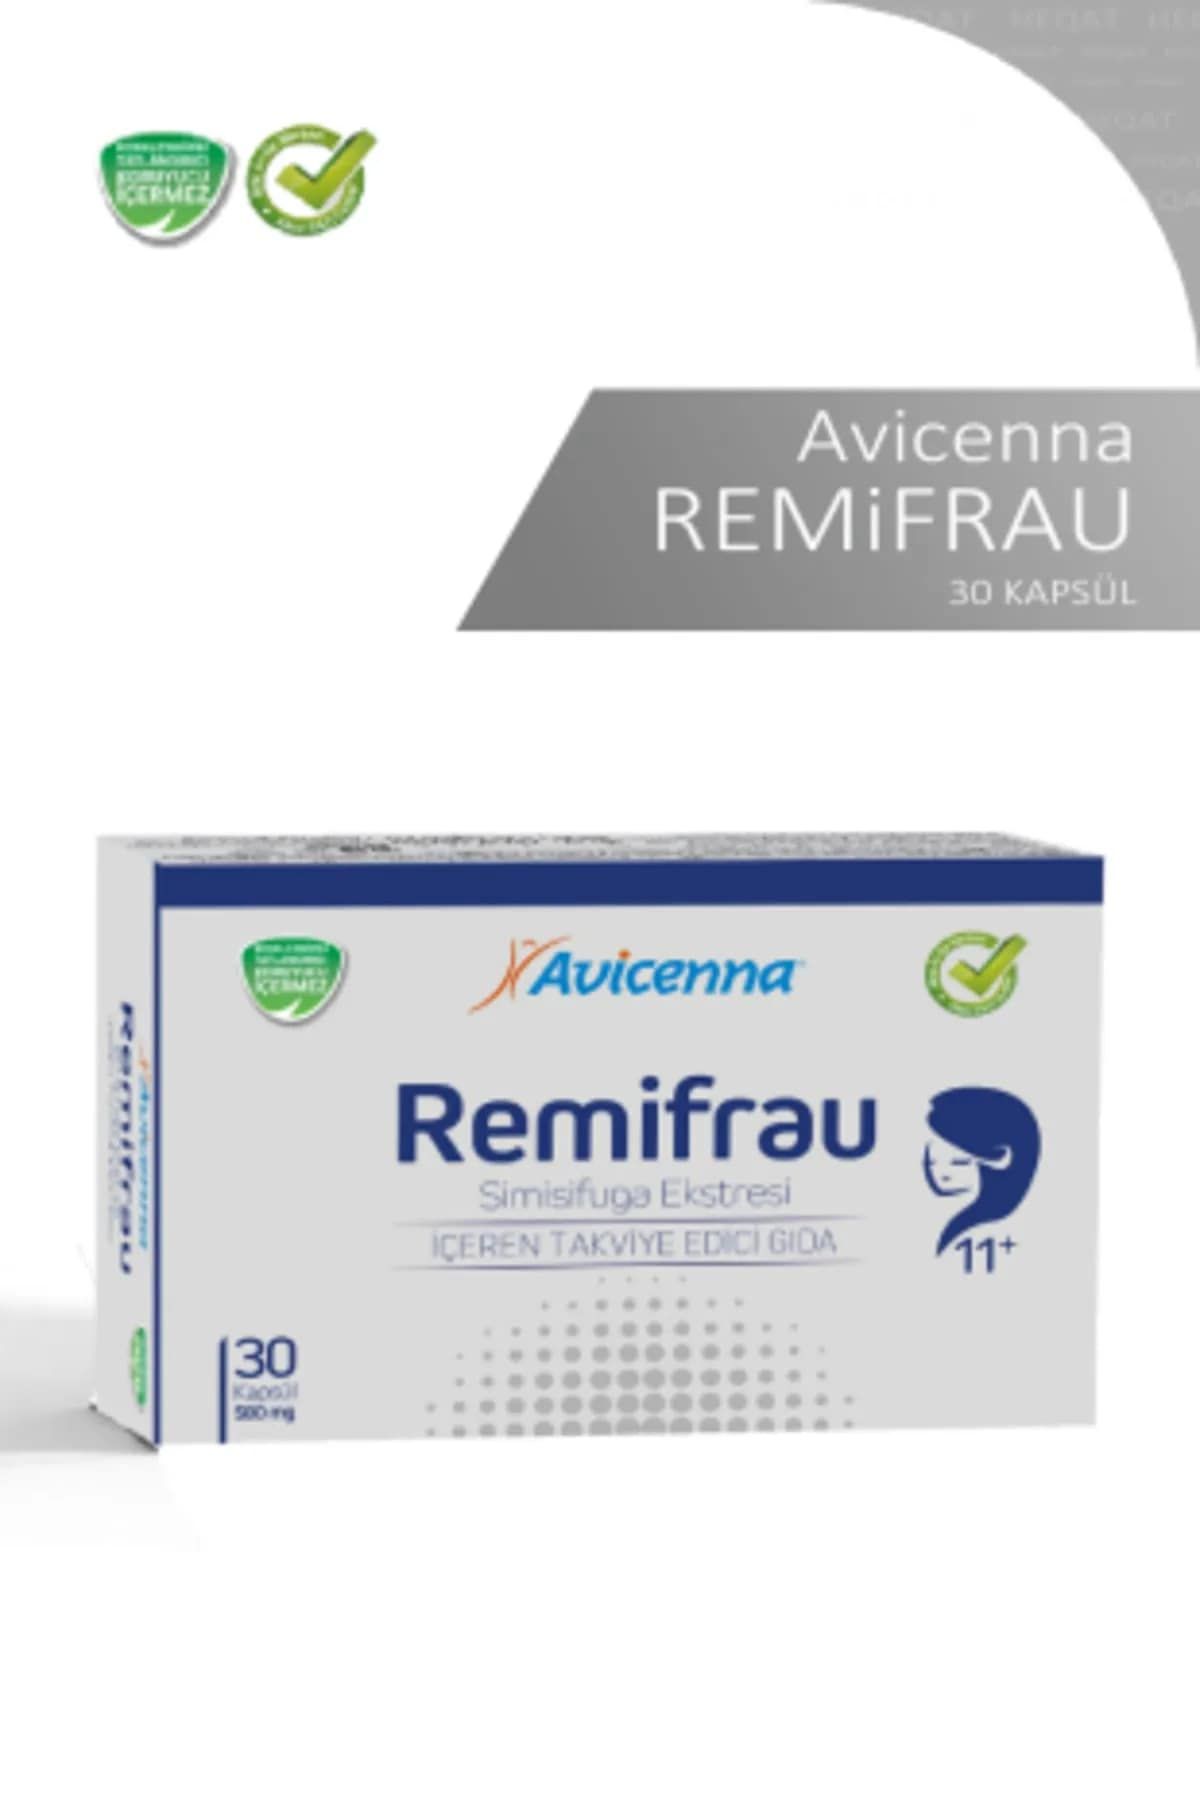 Avicenna Remifrau - Simisifuga Ekstresi İçeren Takviye Edici Gida - 30 Kapsül